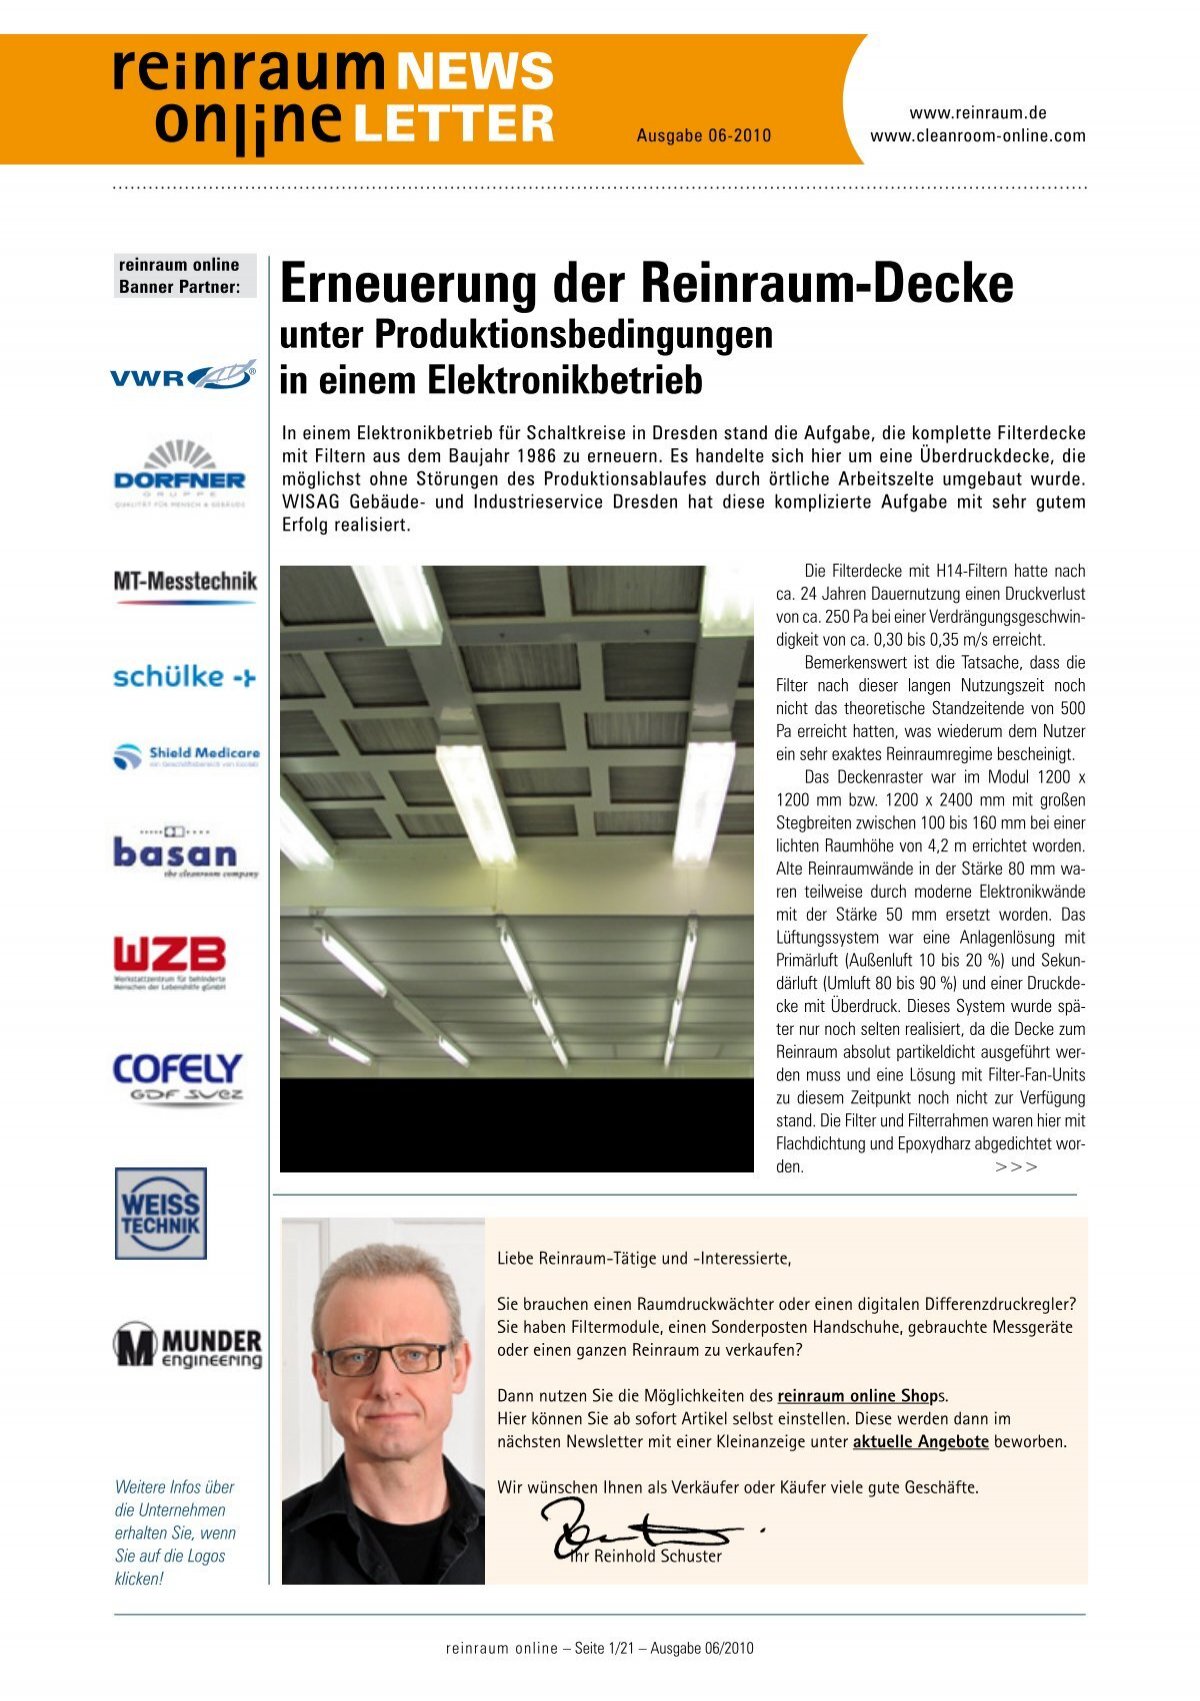 Erneuerung der Reinraum-Decke - WA Schuster GmbH Stuttgart